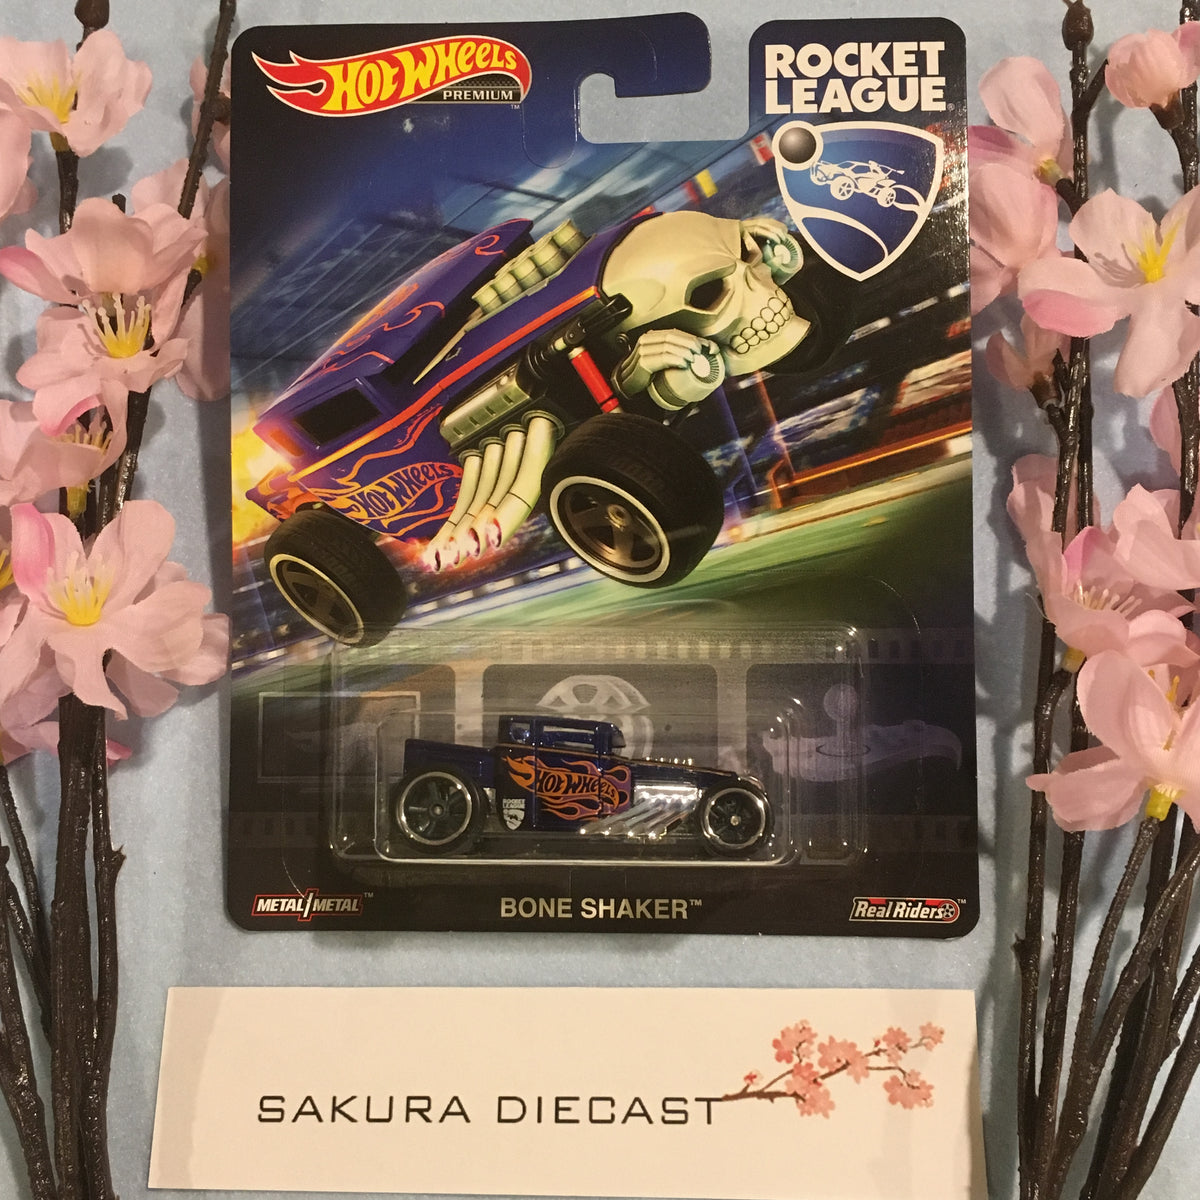 1/64 Hot Wheels Premium - Rocket League Bone Shaker – Sakura Diecast